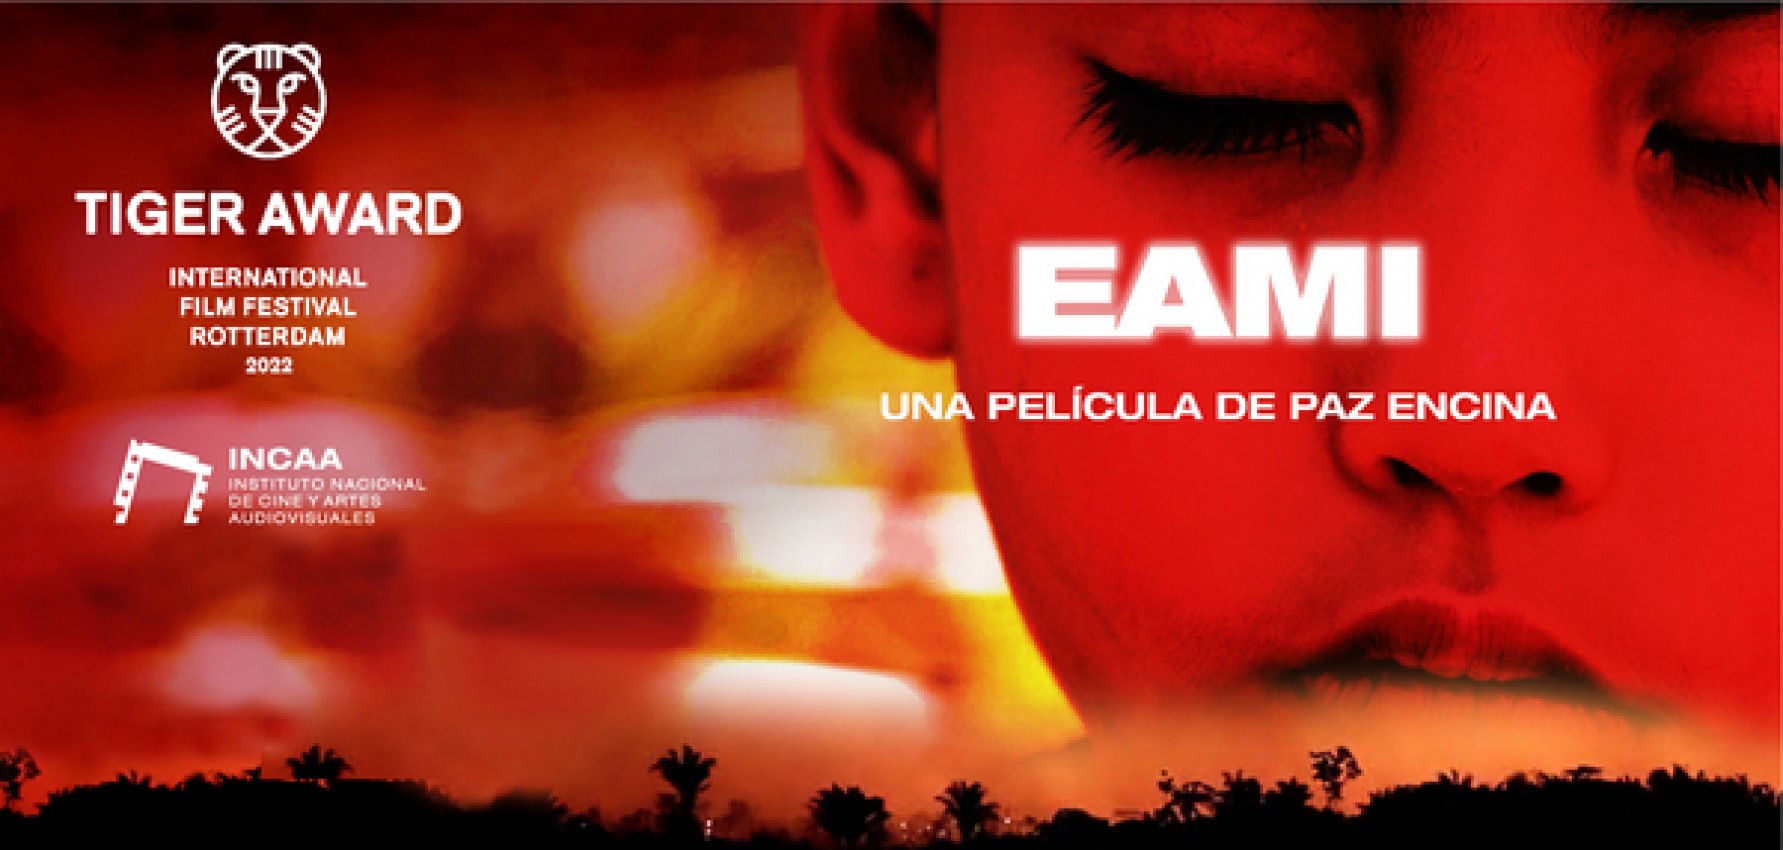 EAMI (estreno)